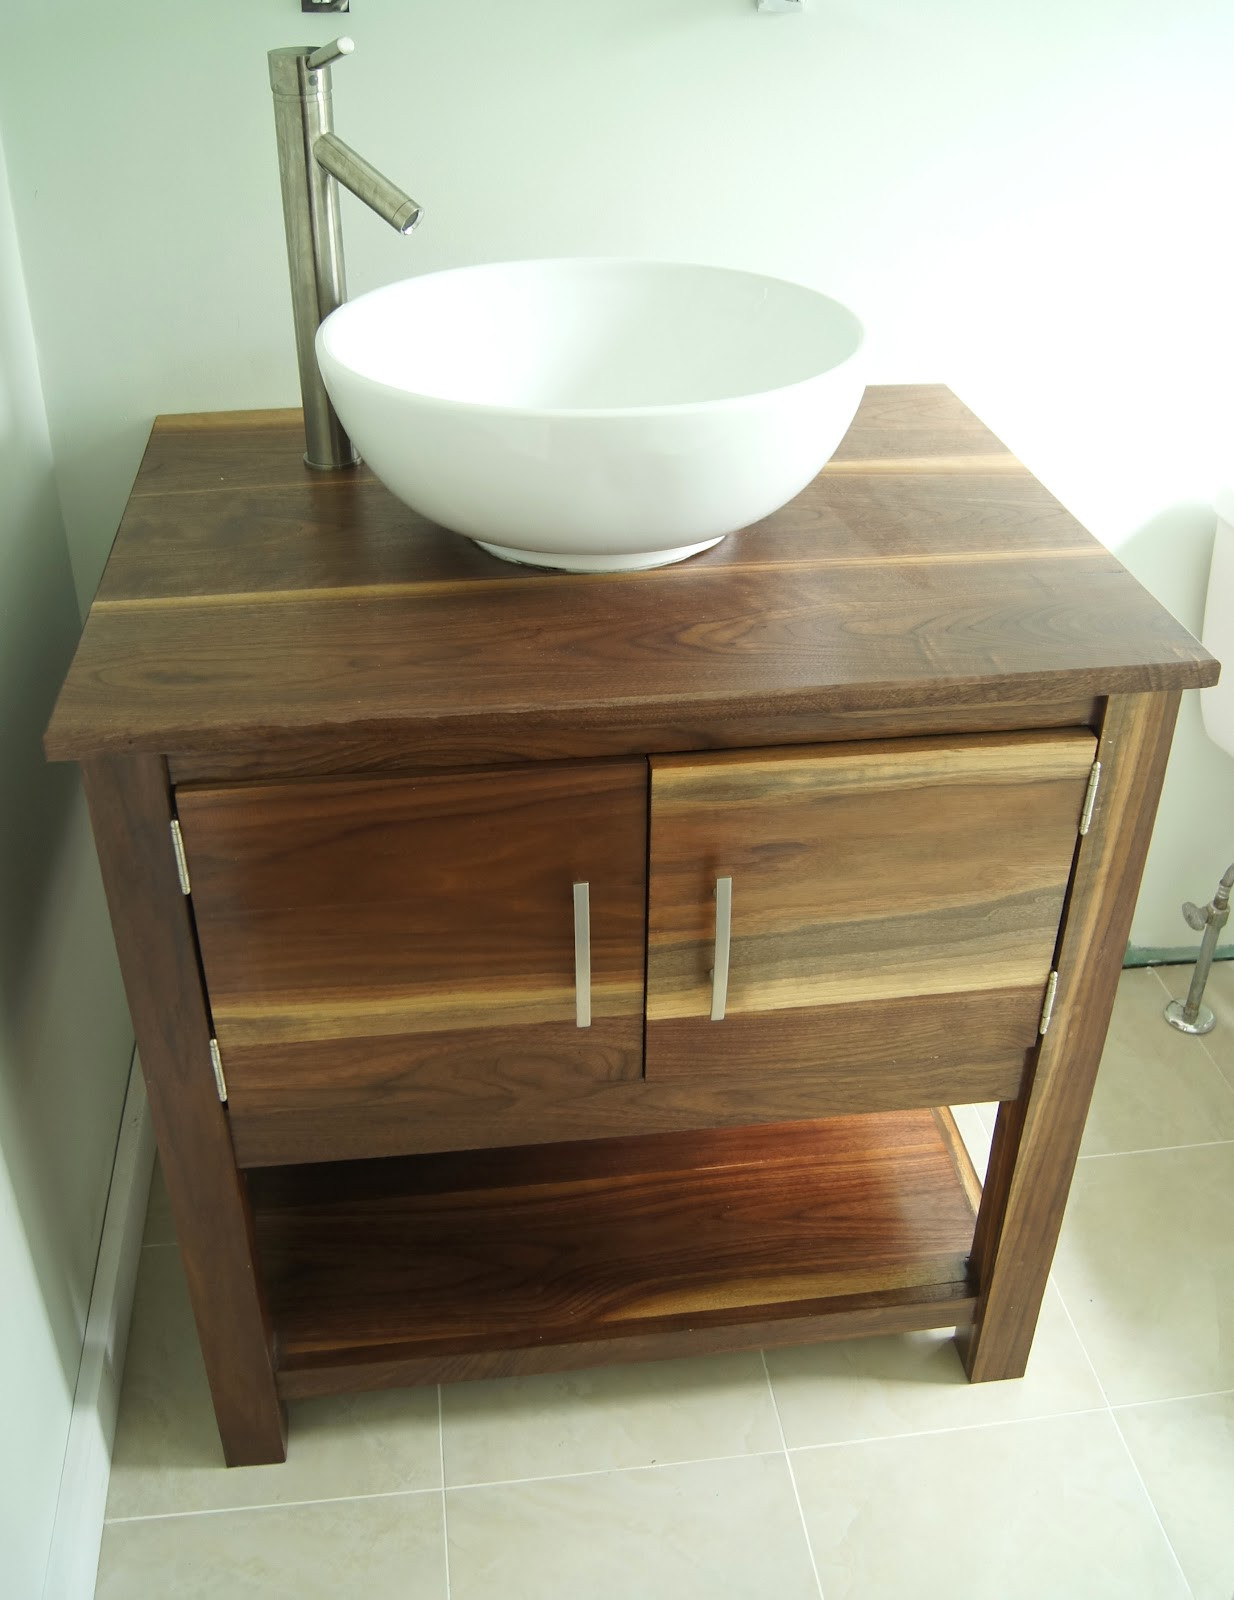 Best ideas about Bathroom Vanity DIY
. Save or Pin Wightman Specialty Woods DIY Bathroom Vanity Now.